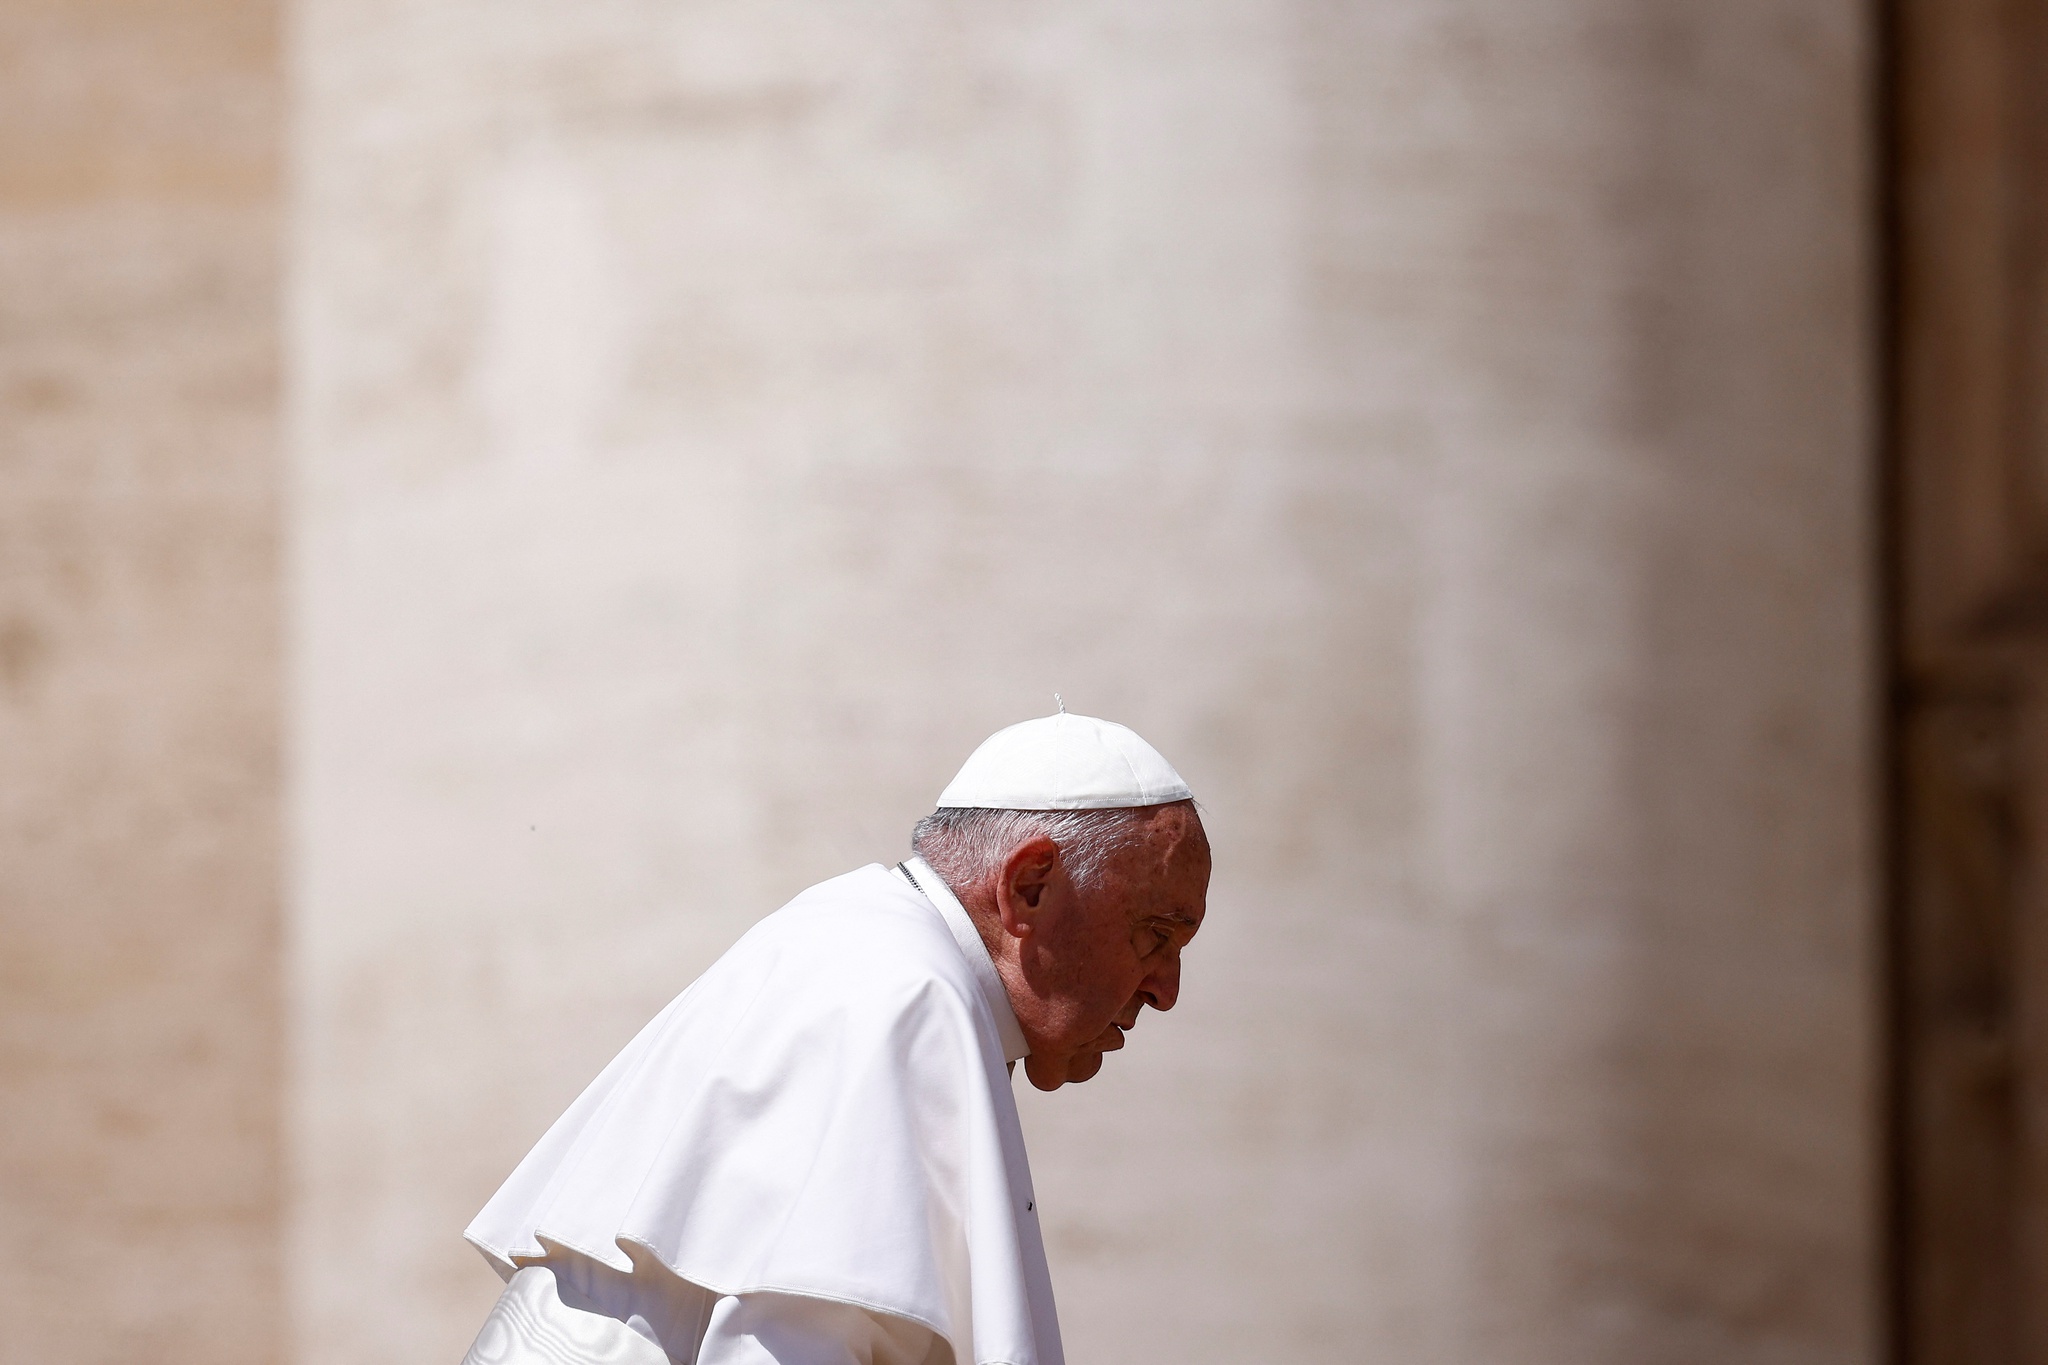 Le pape s’excuse d’avoir utilisé un terme offensant envers les personnes LGBT |  Pape François